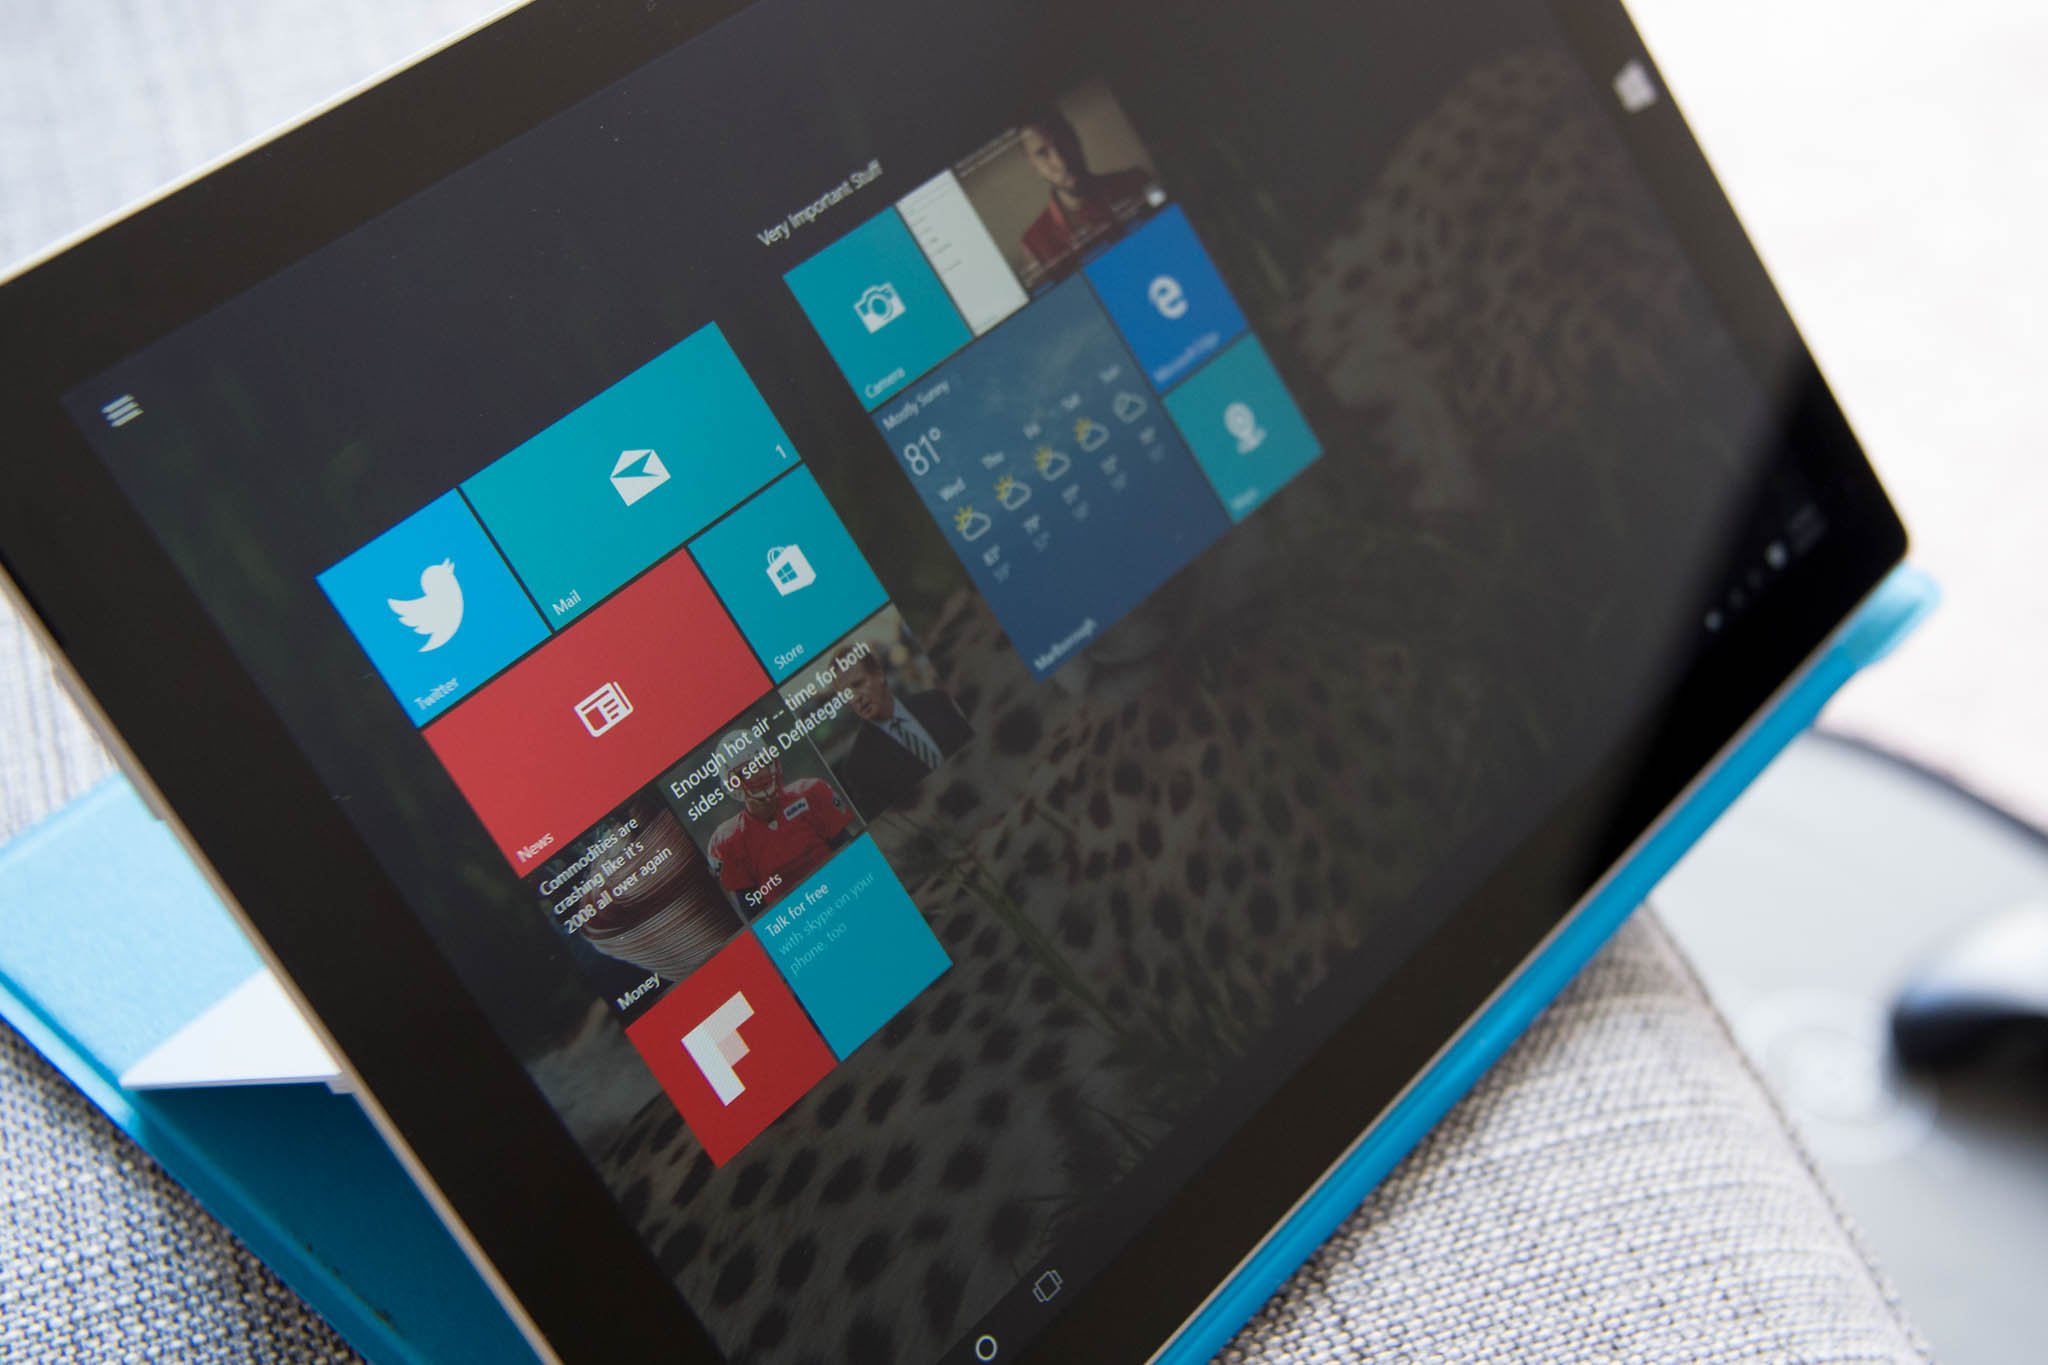 Windows 10 Start in Surface Pro 3